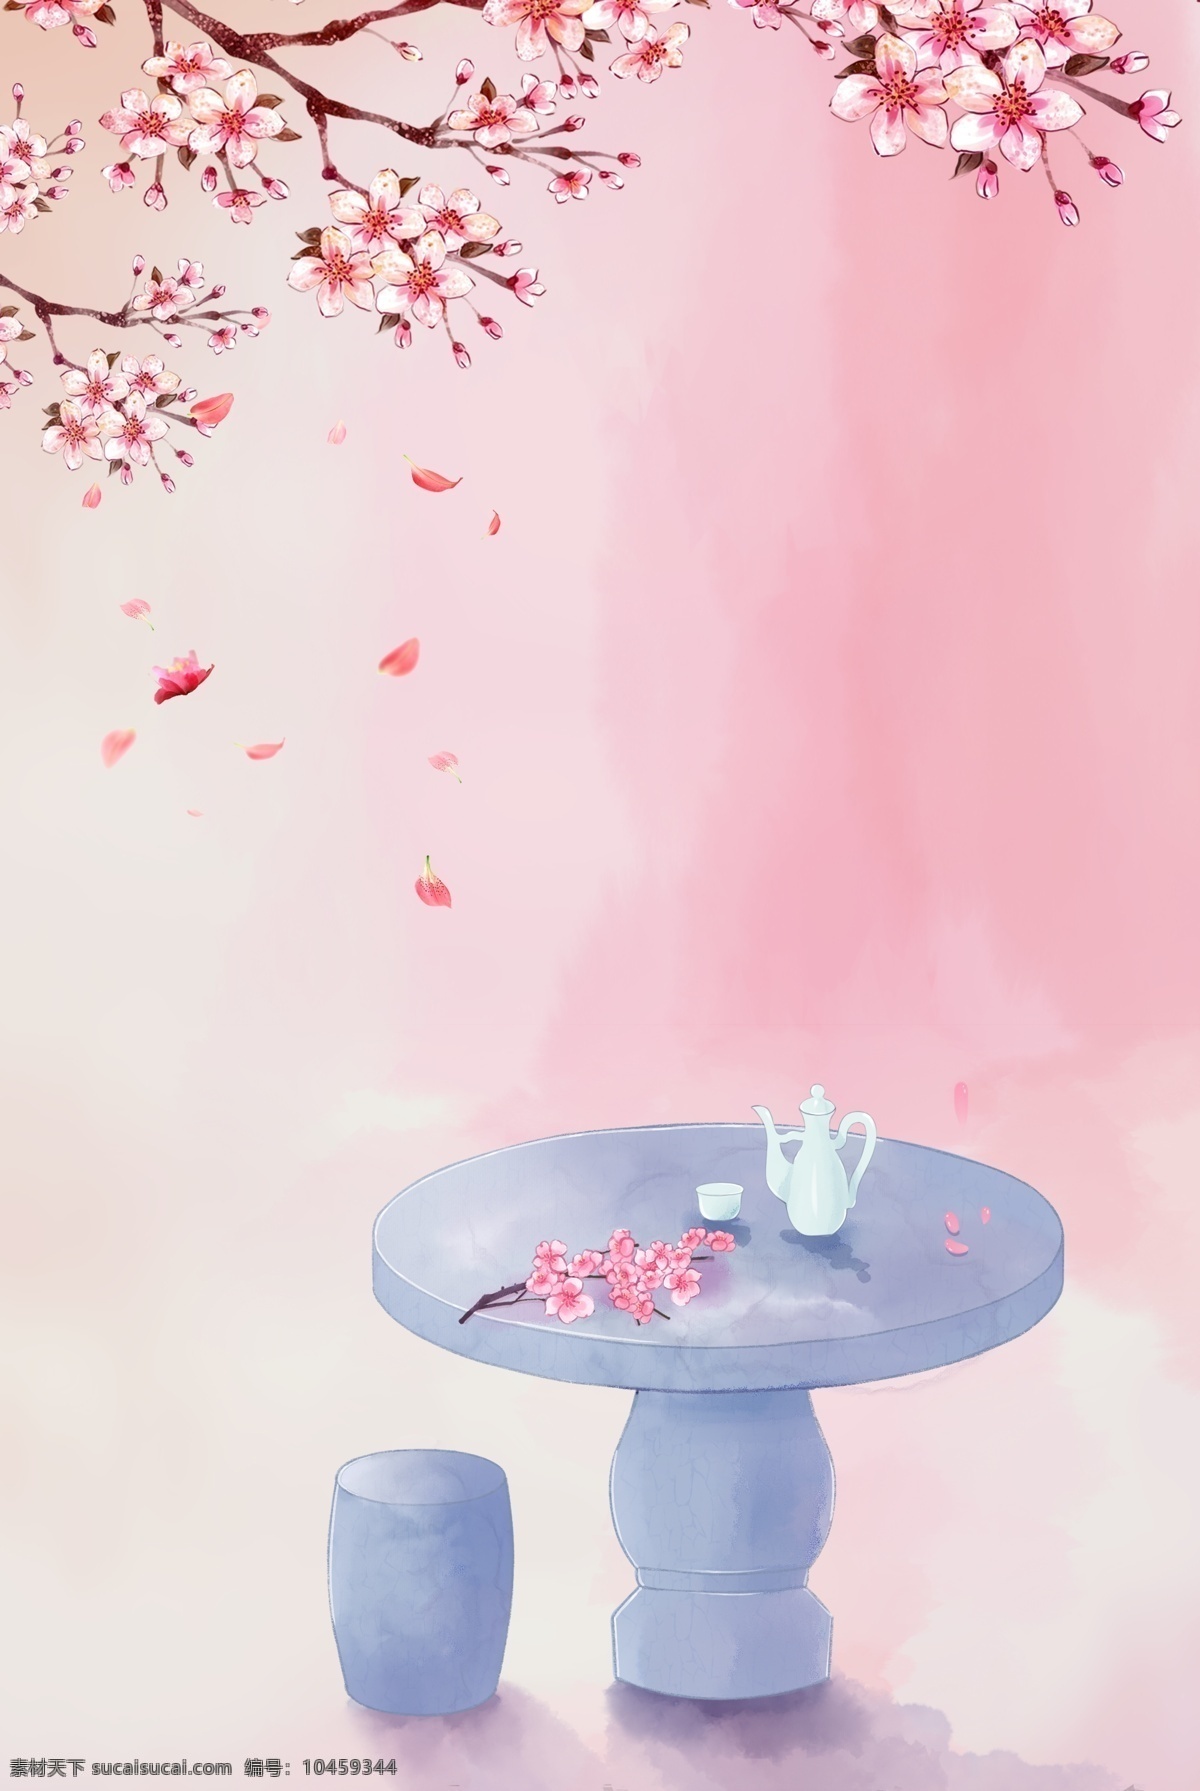 中式 唯美 桃花 小 清新 背景 手绘 小清新 粉色 桃花节 春天 简约 商业 花瓣